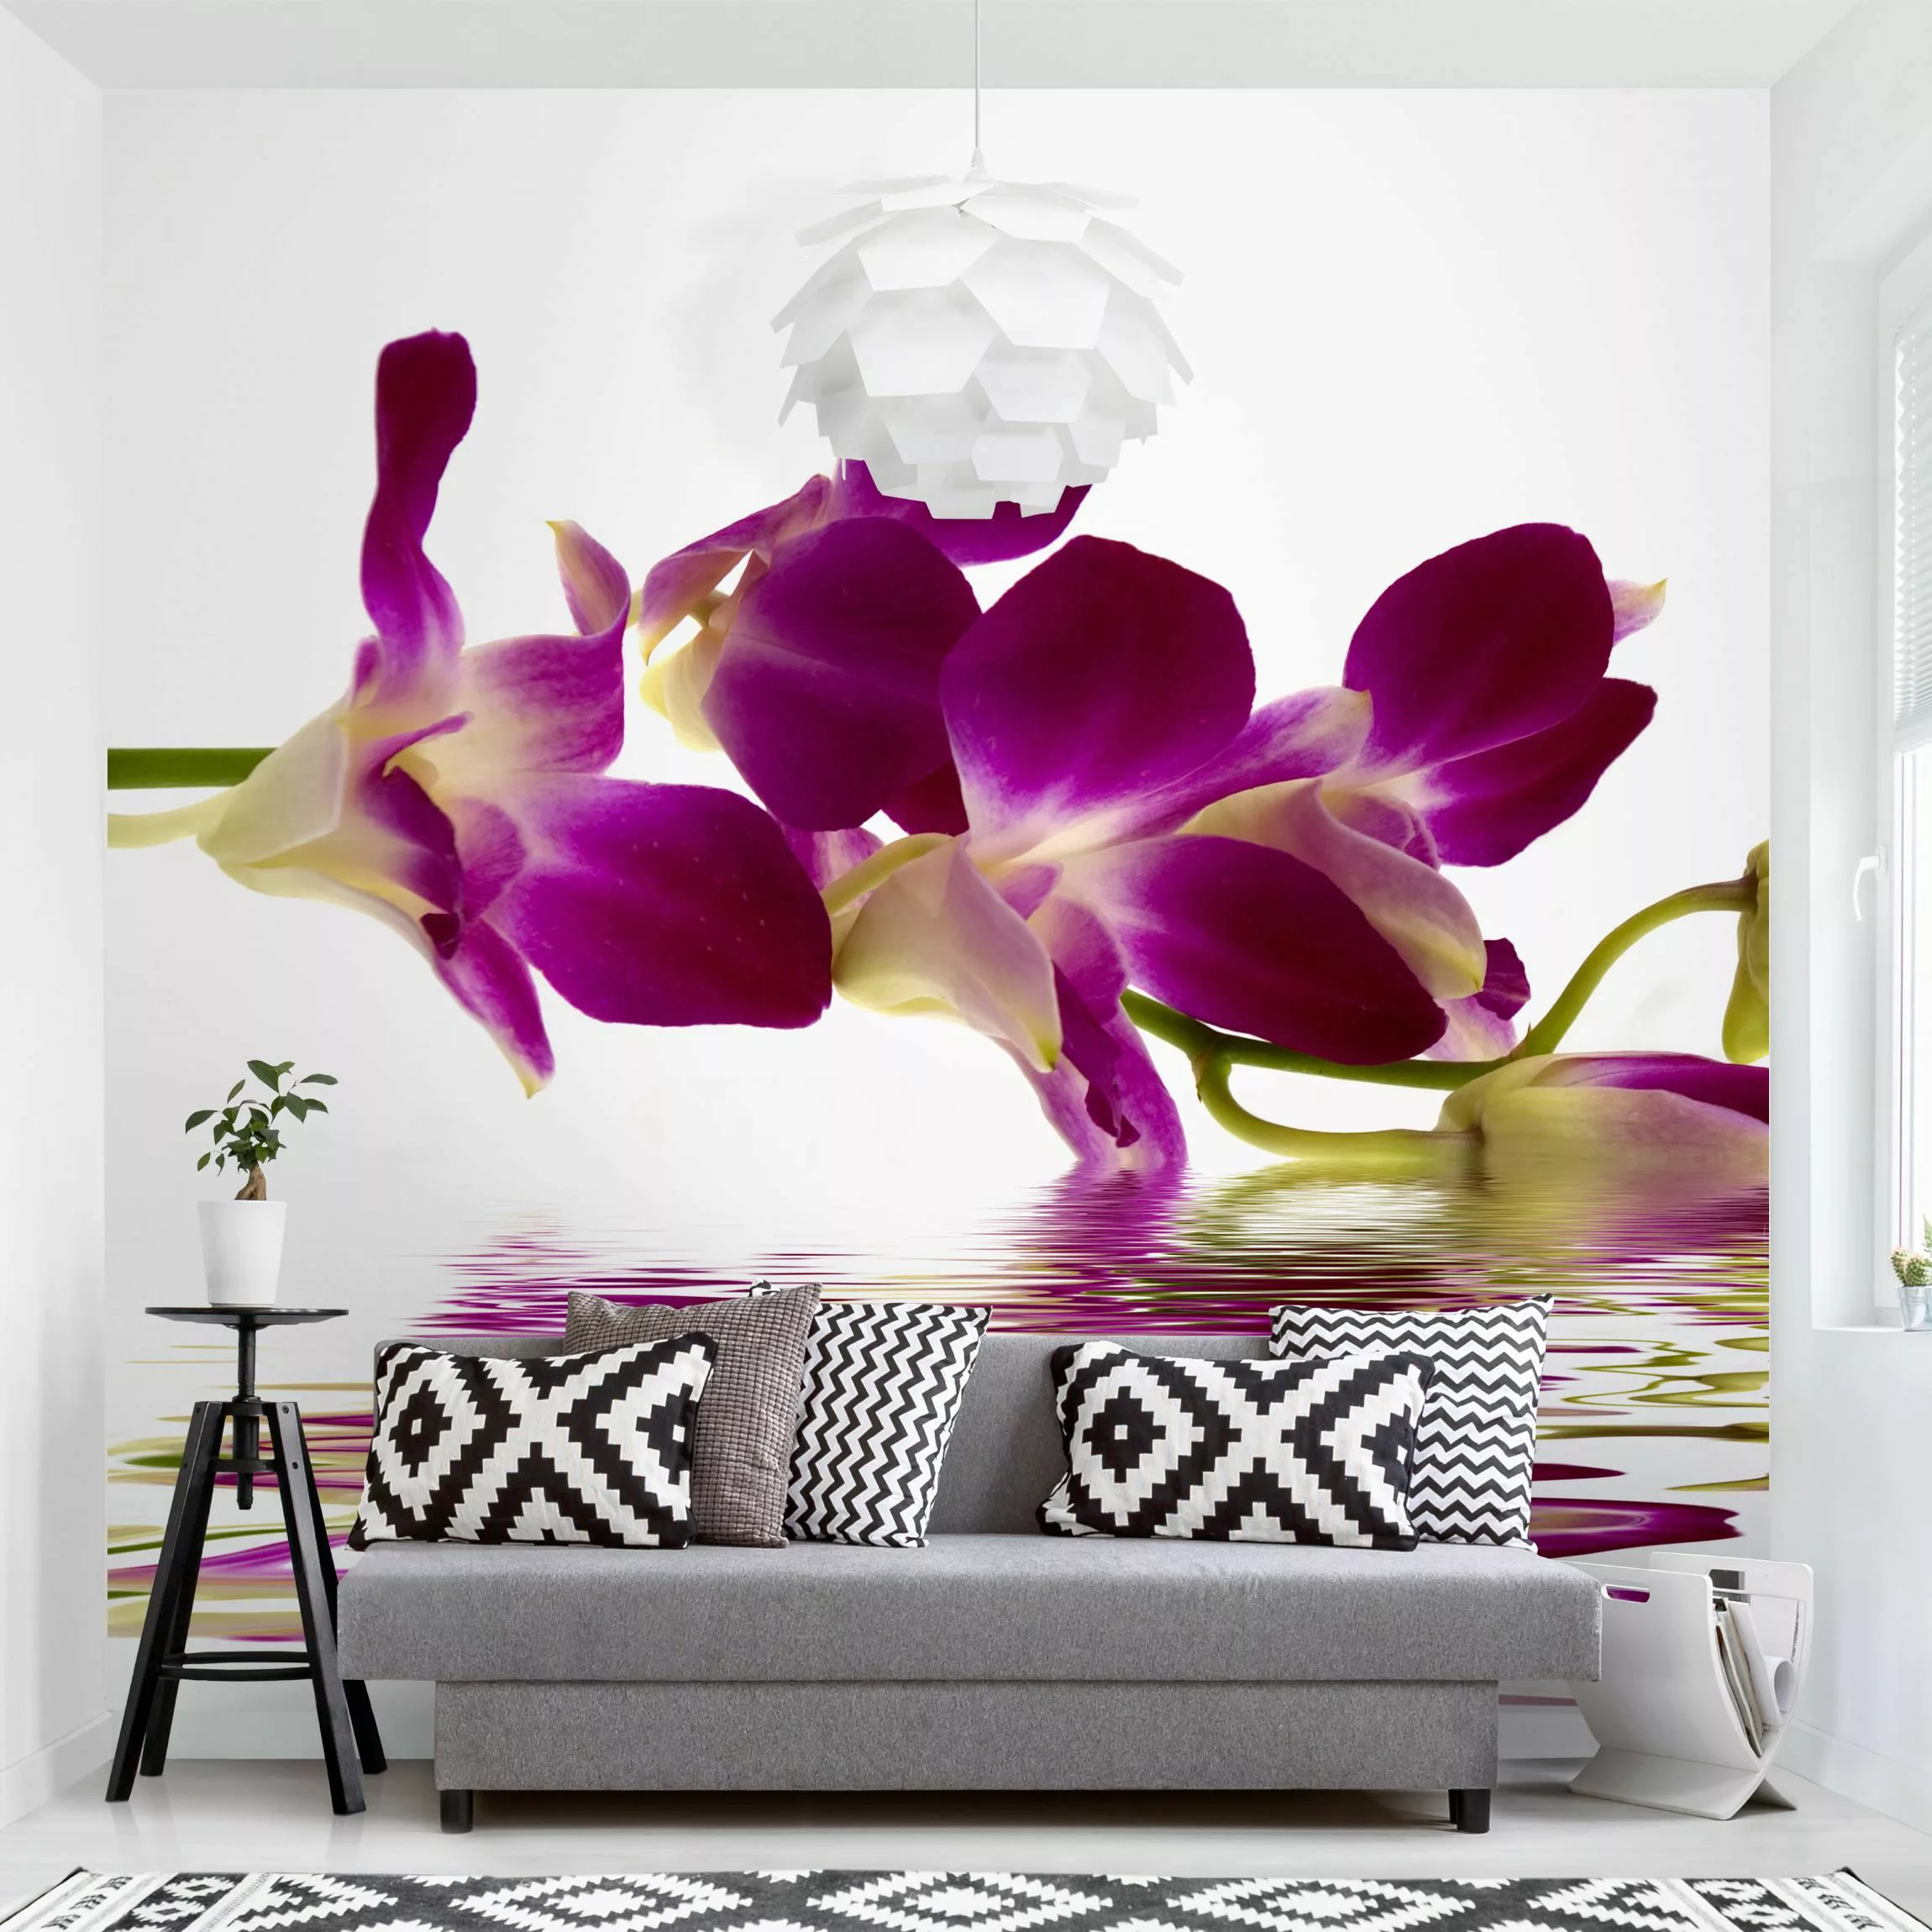 Fototapete Pink Orchid Waters günstig online kaufen